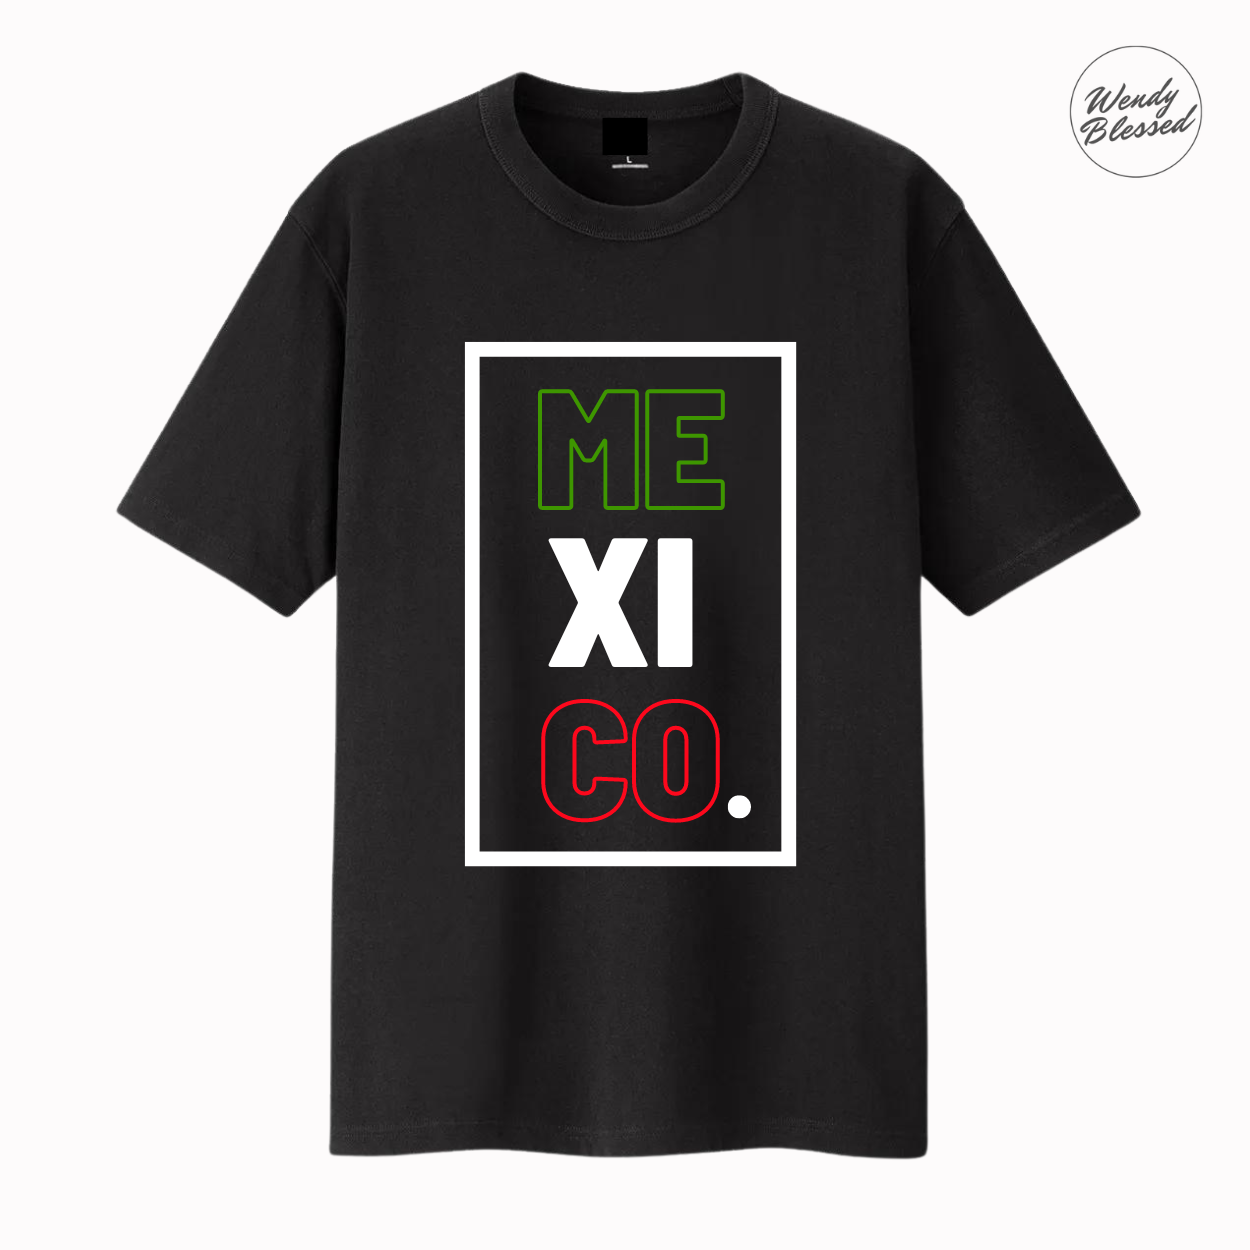 Mexico T-Shirt / Camiseta with unique design.